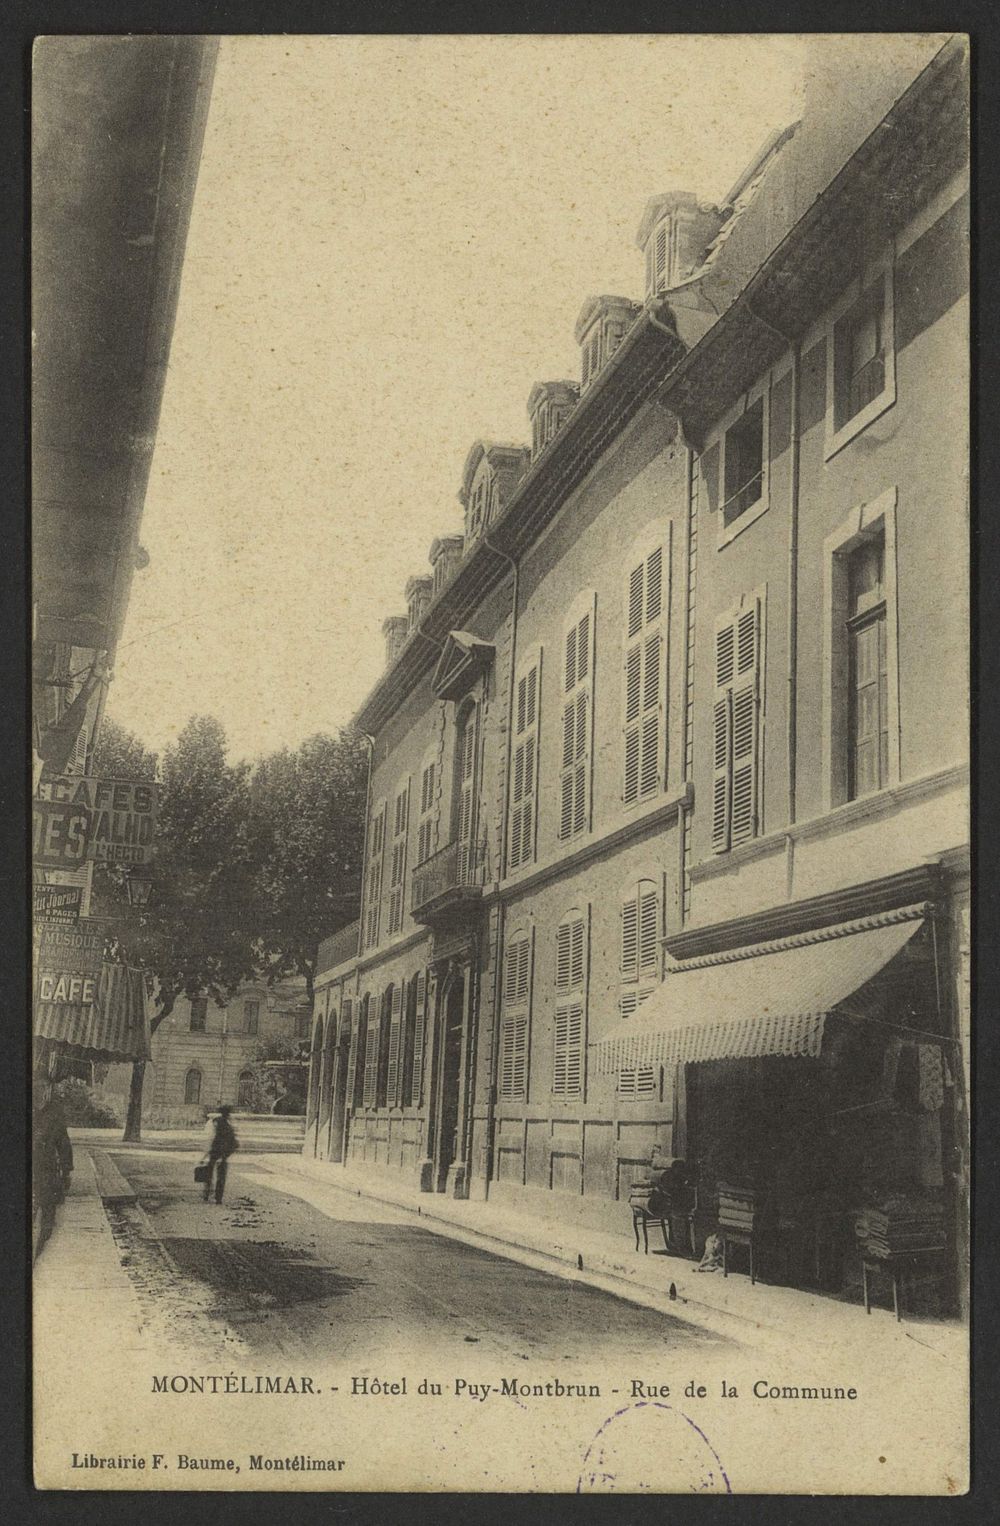 Montélimar - Hôtel du Puy-Montbrun - Rue de la Commune